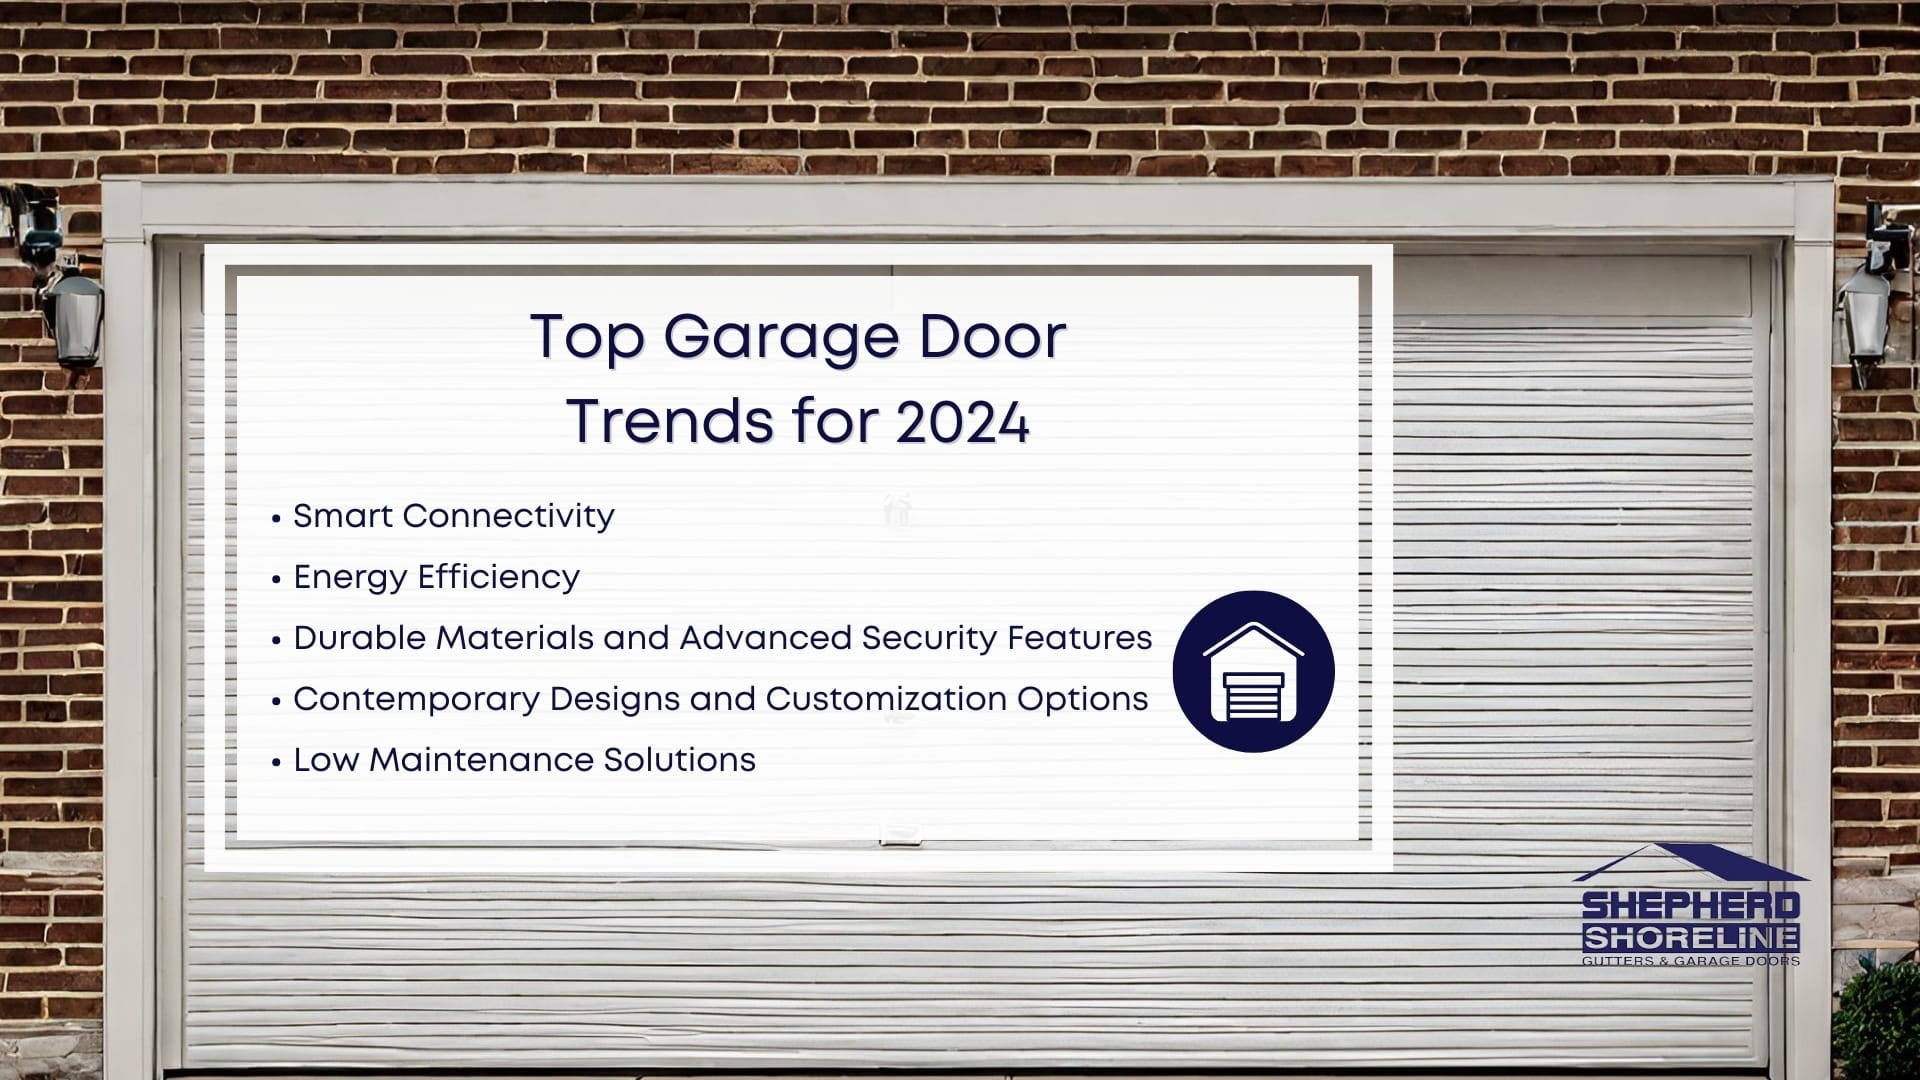 Infographic image of top garage door trends for 2024